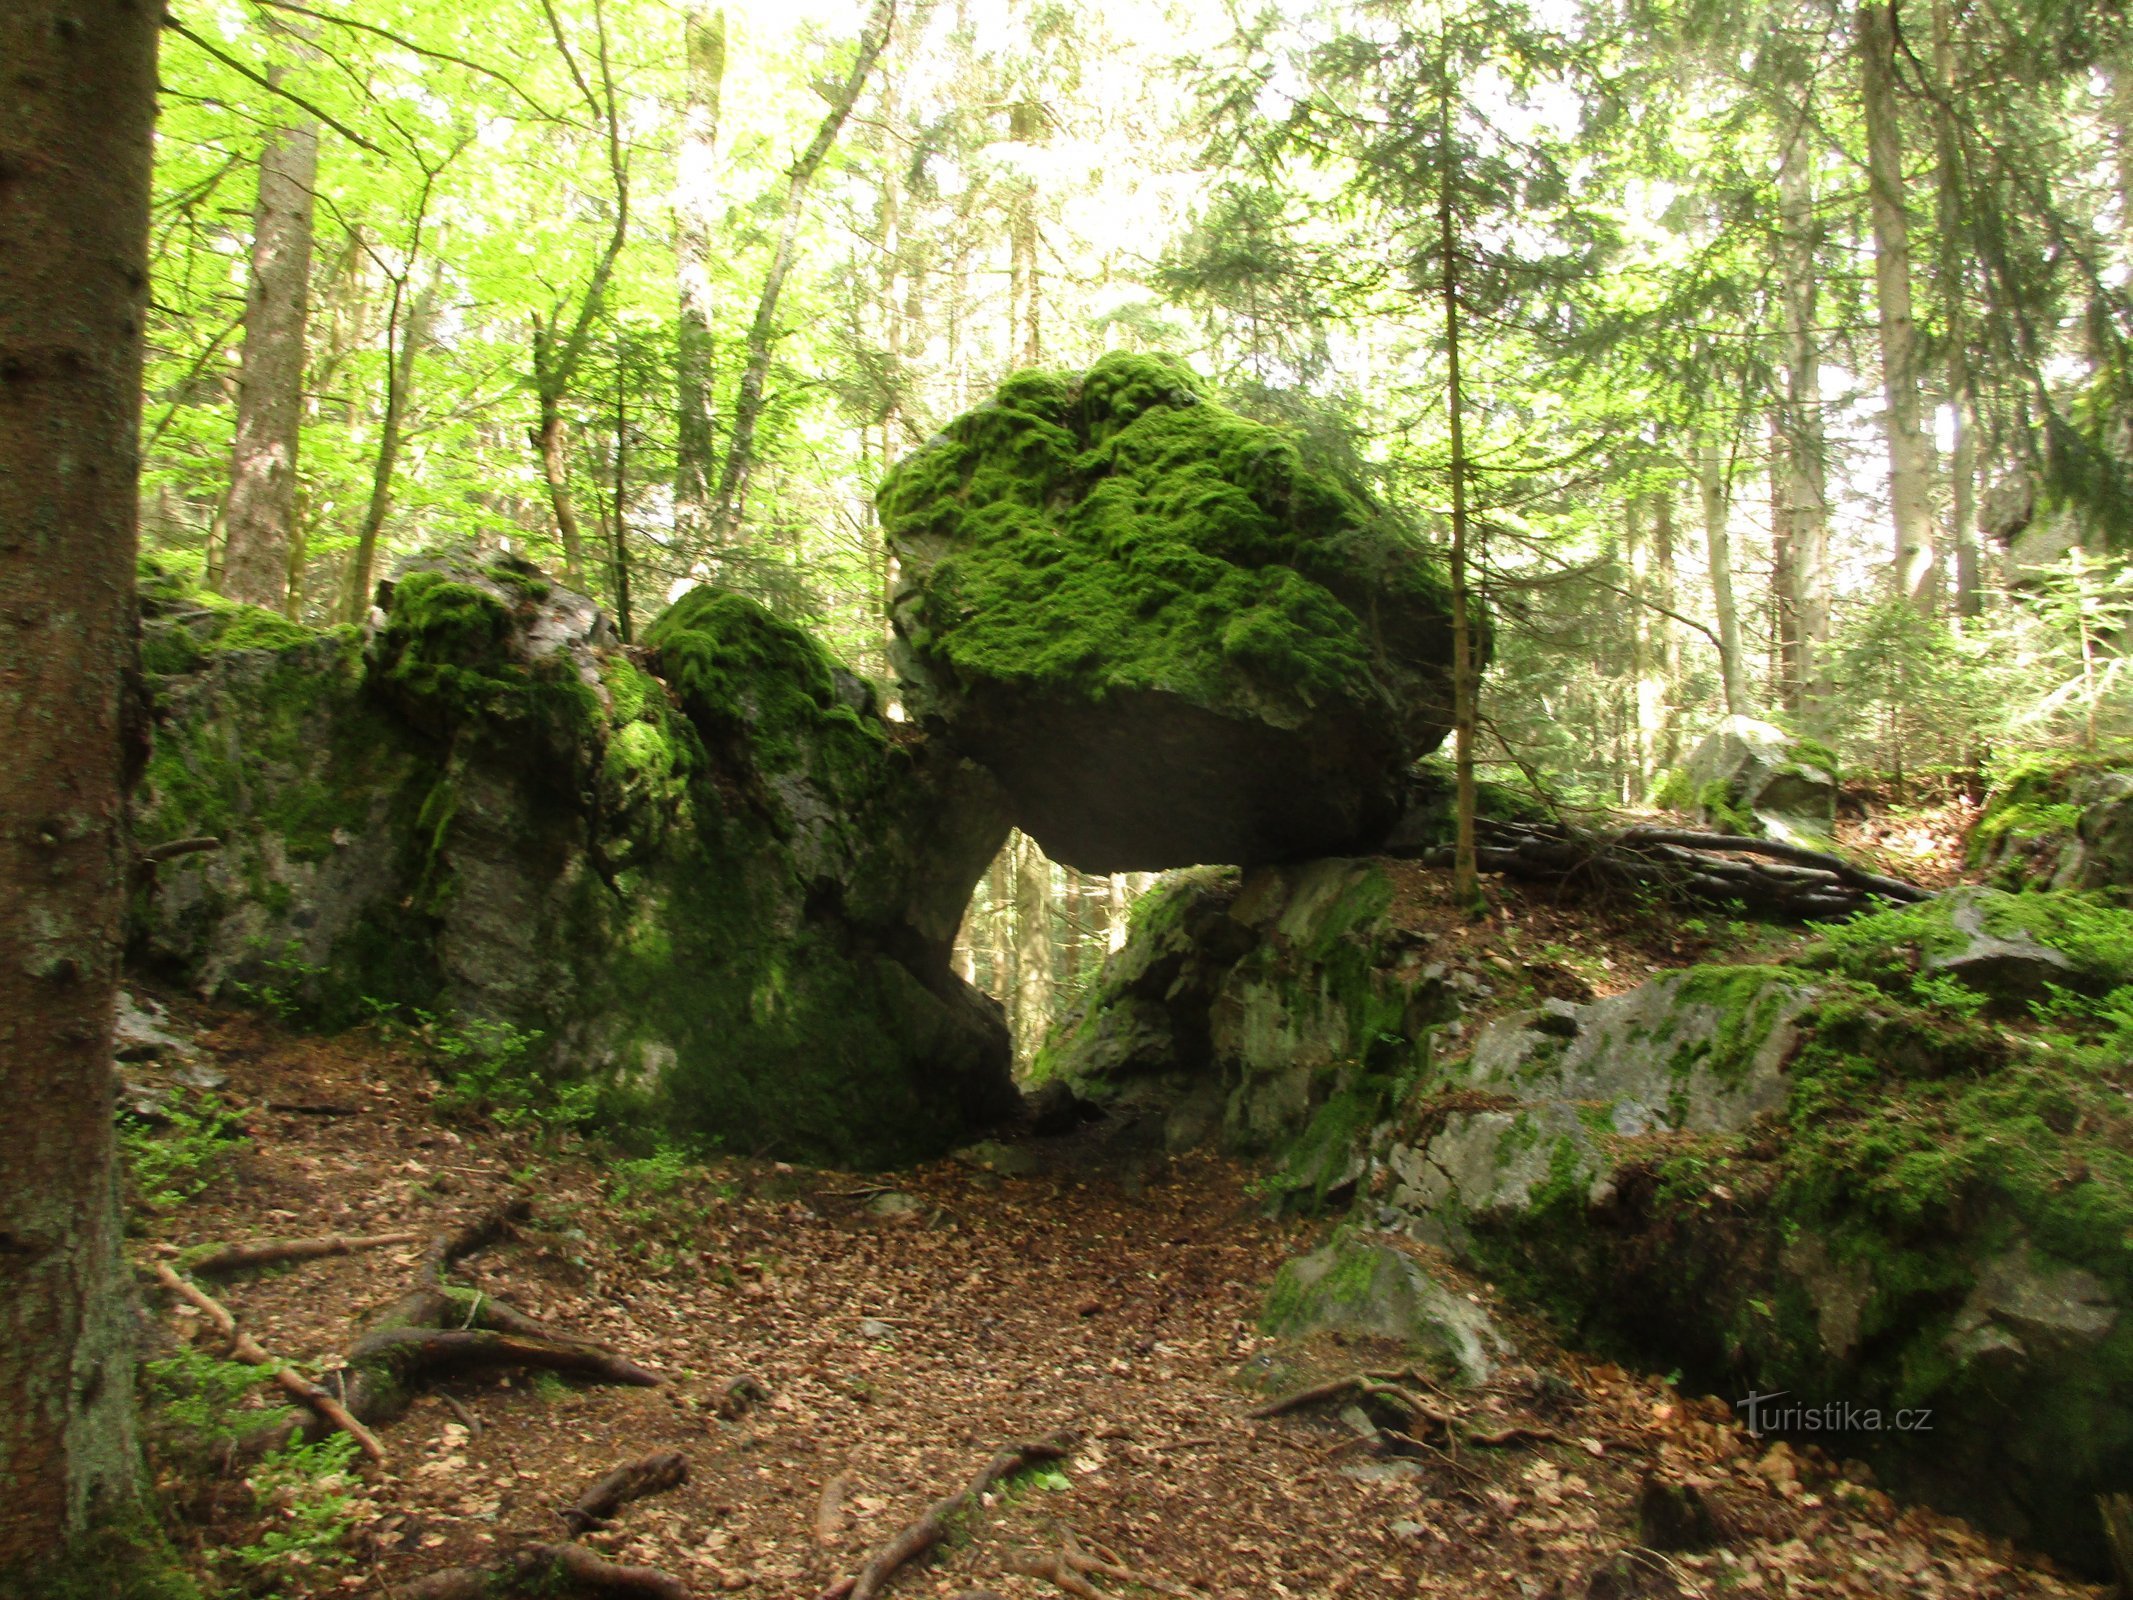 Trục chính của quỷ: Tảng đá bên dưới Hengst